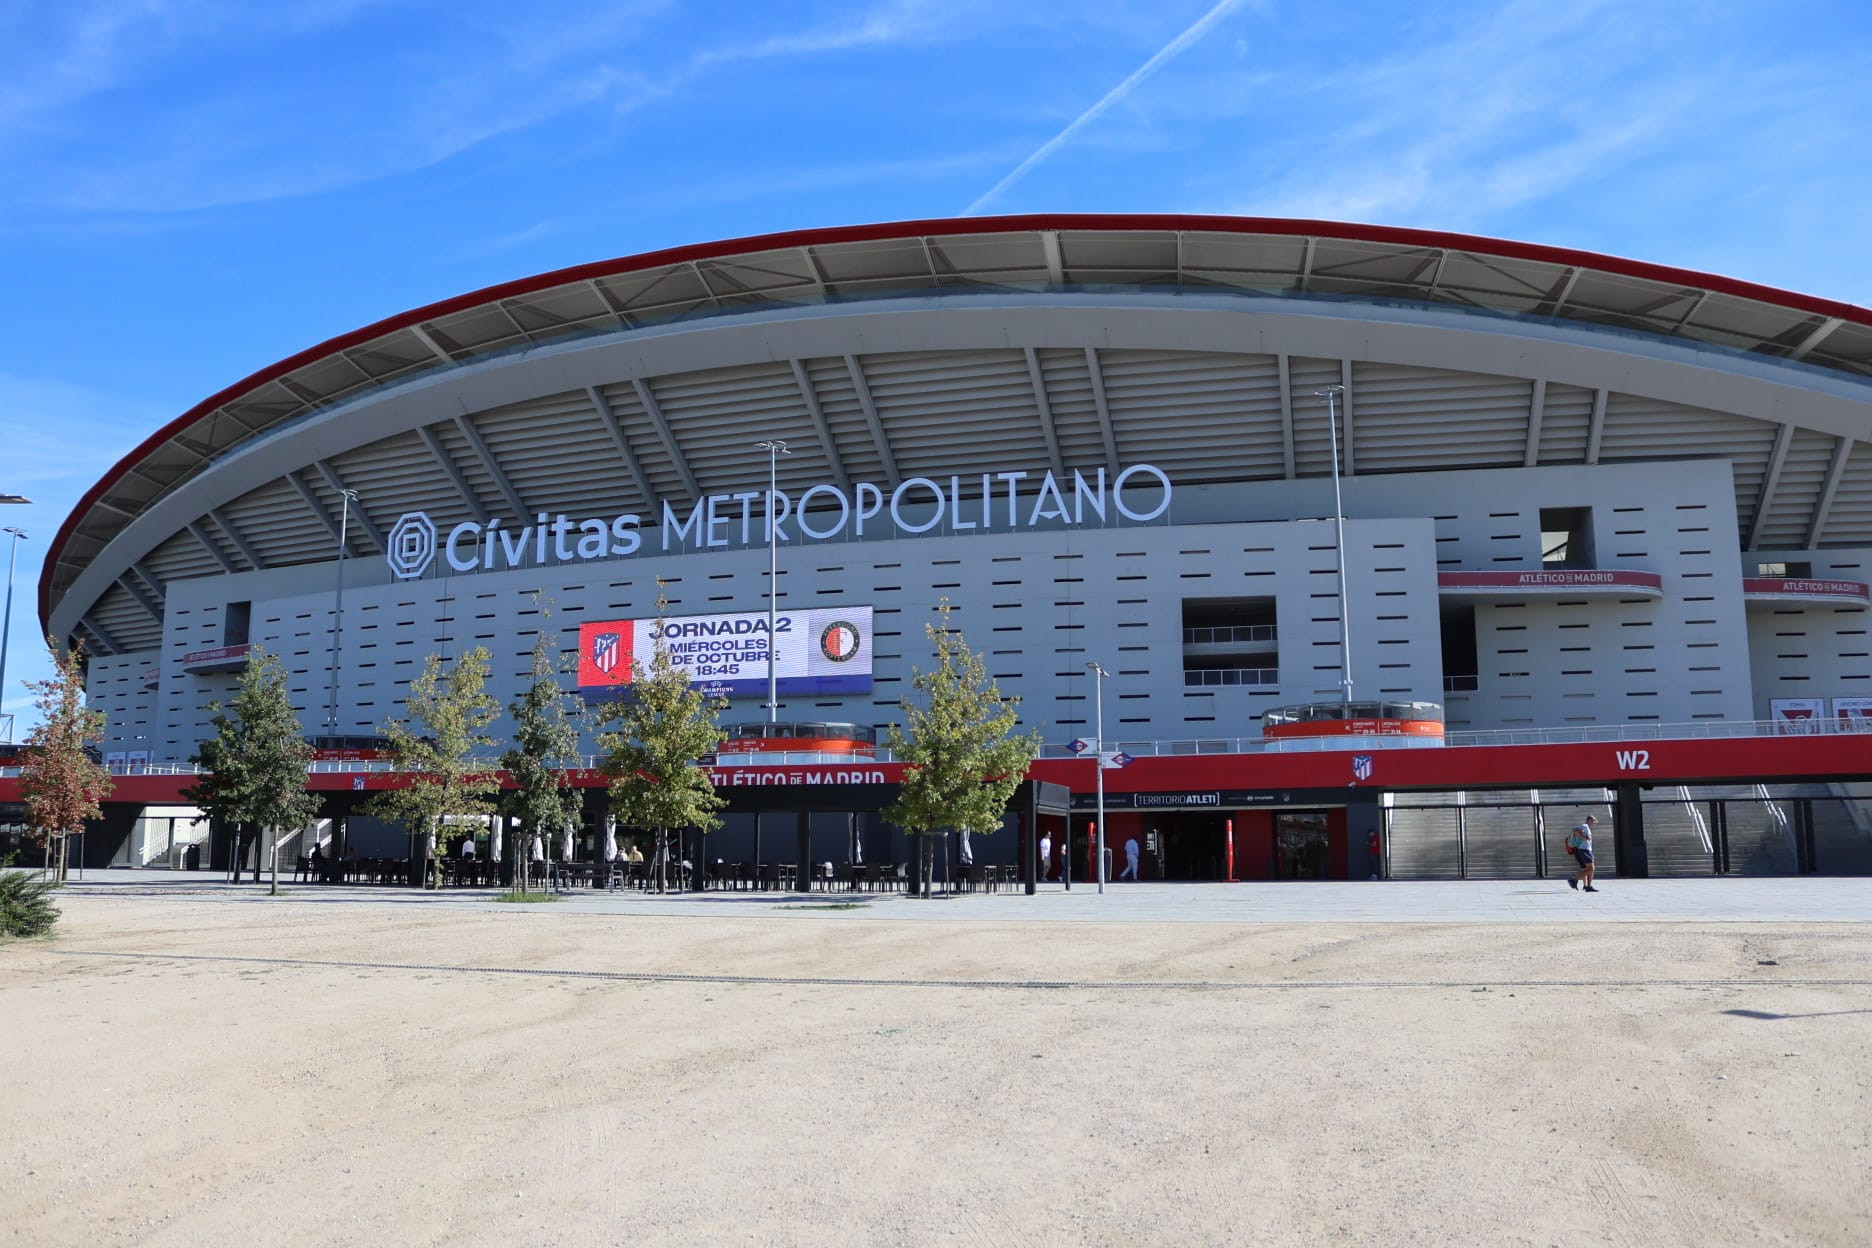 Feyenoord belegt dinsdag training in stadion Atlético